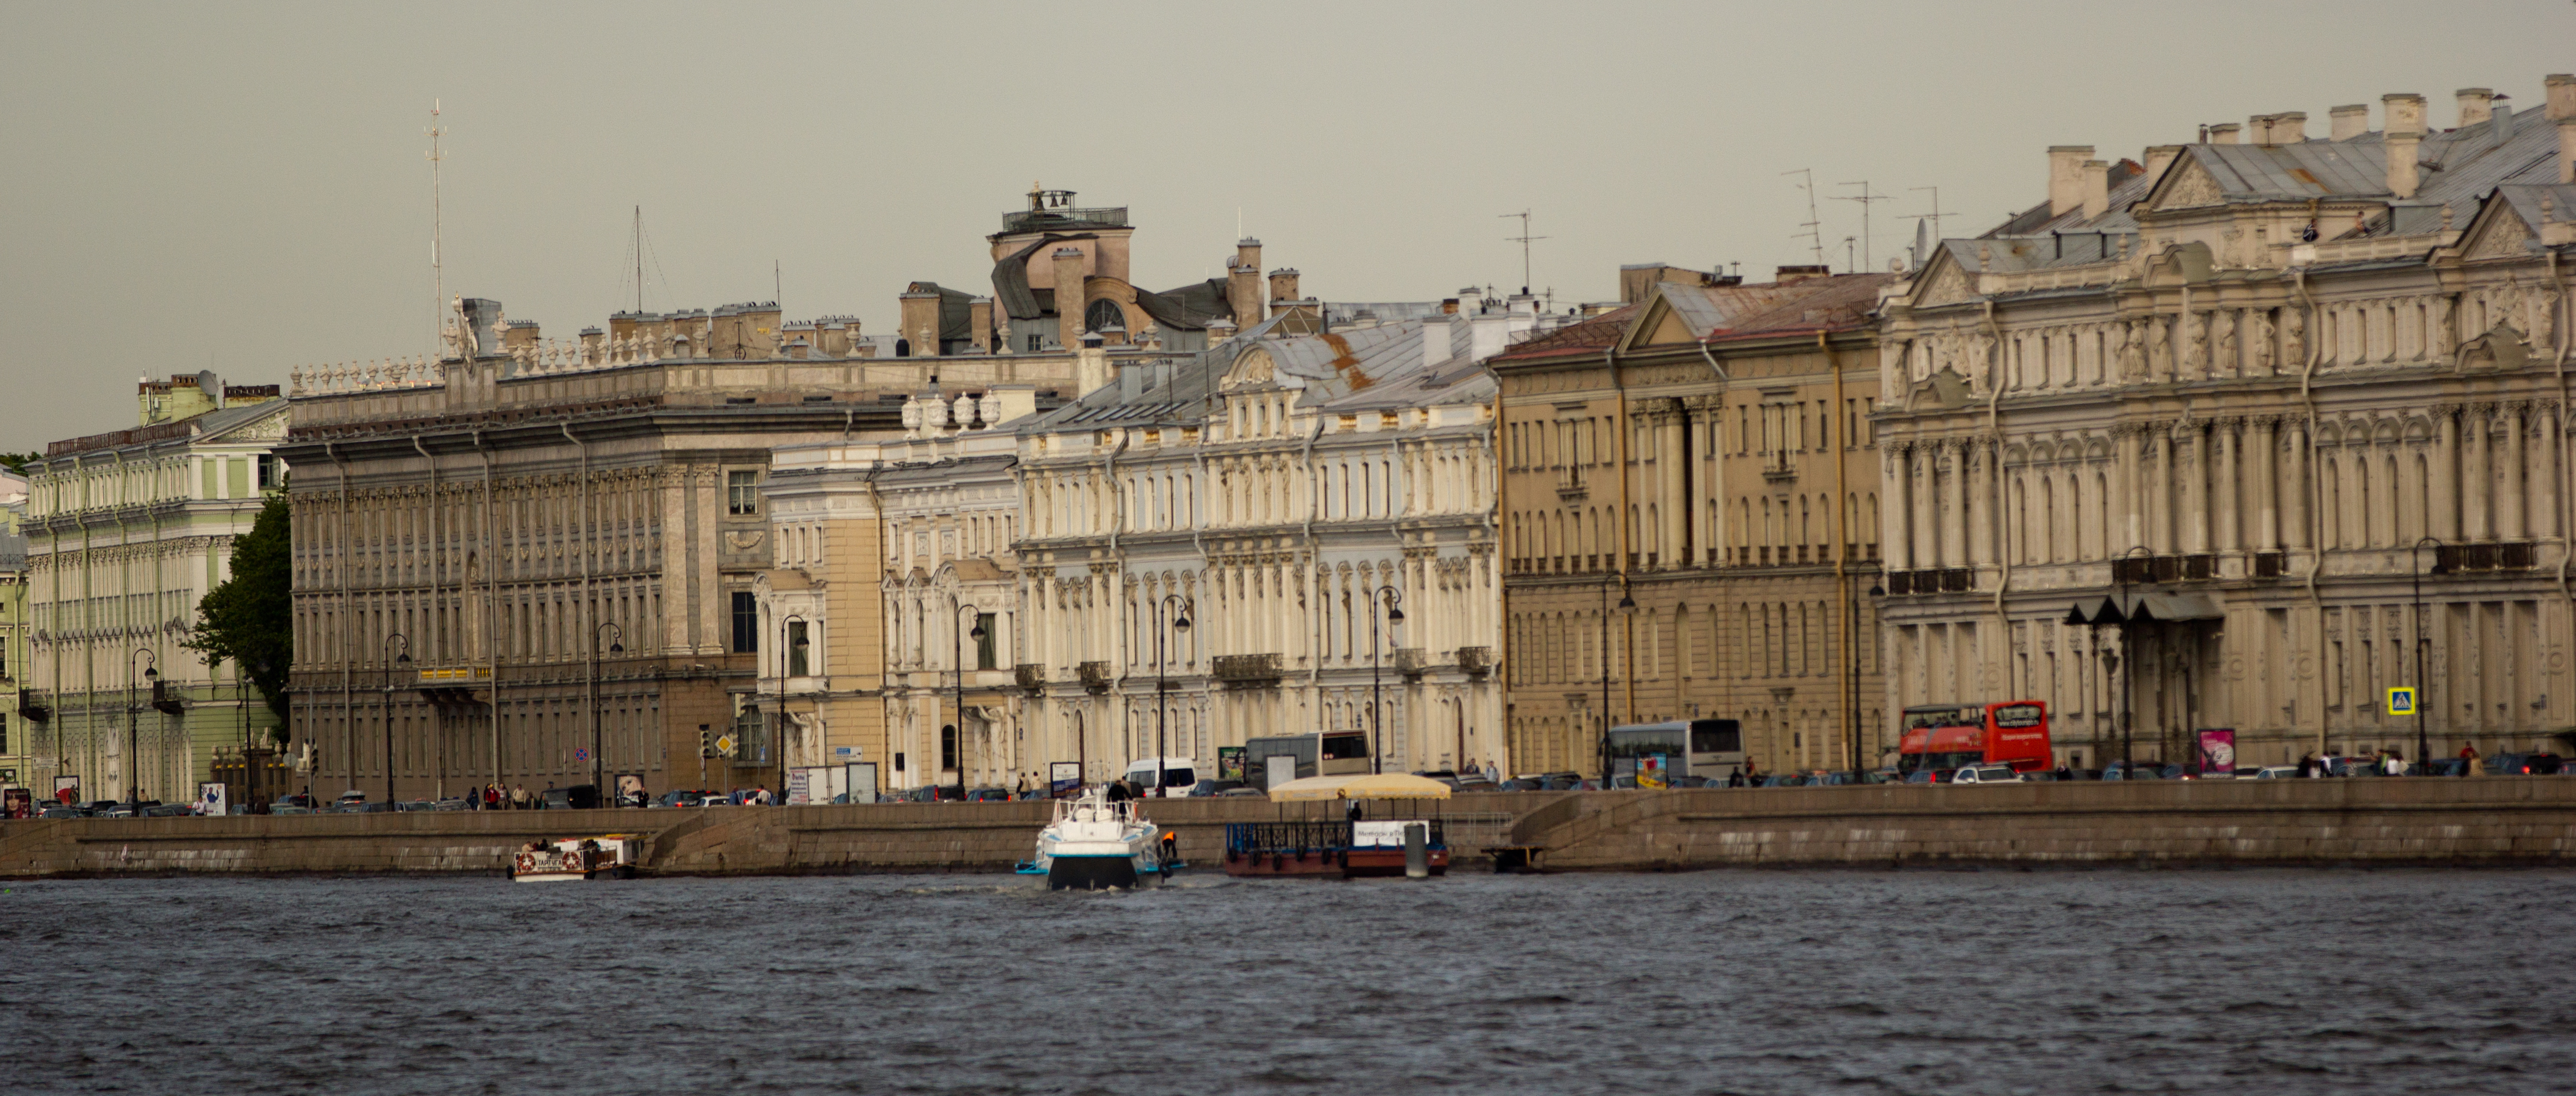 File:St.Petersburg Russia Buildings.jpg - Wikimedia Commons